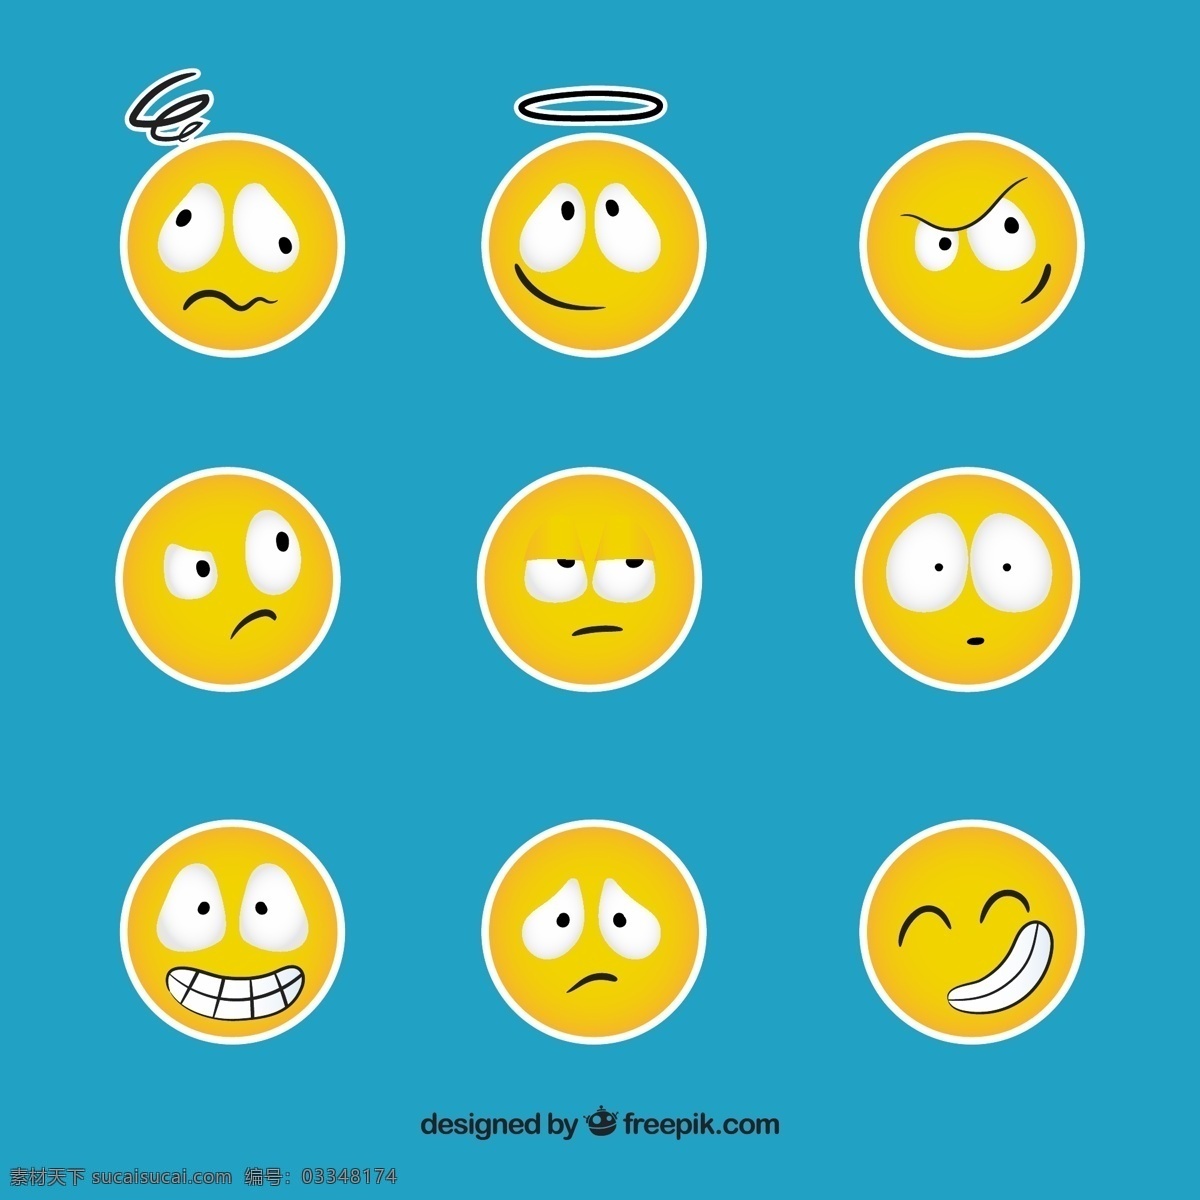 有趣 笑脸 标签 colecction 脸 可爱 微笑 快乐 黄色 贴纸 情感 表情 快乐的脸 笑